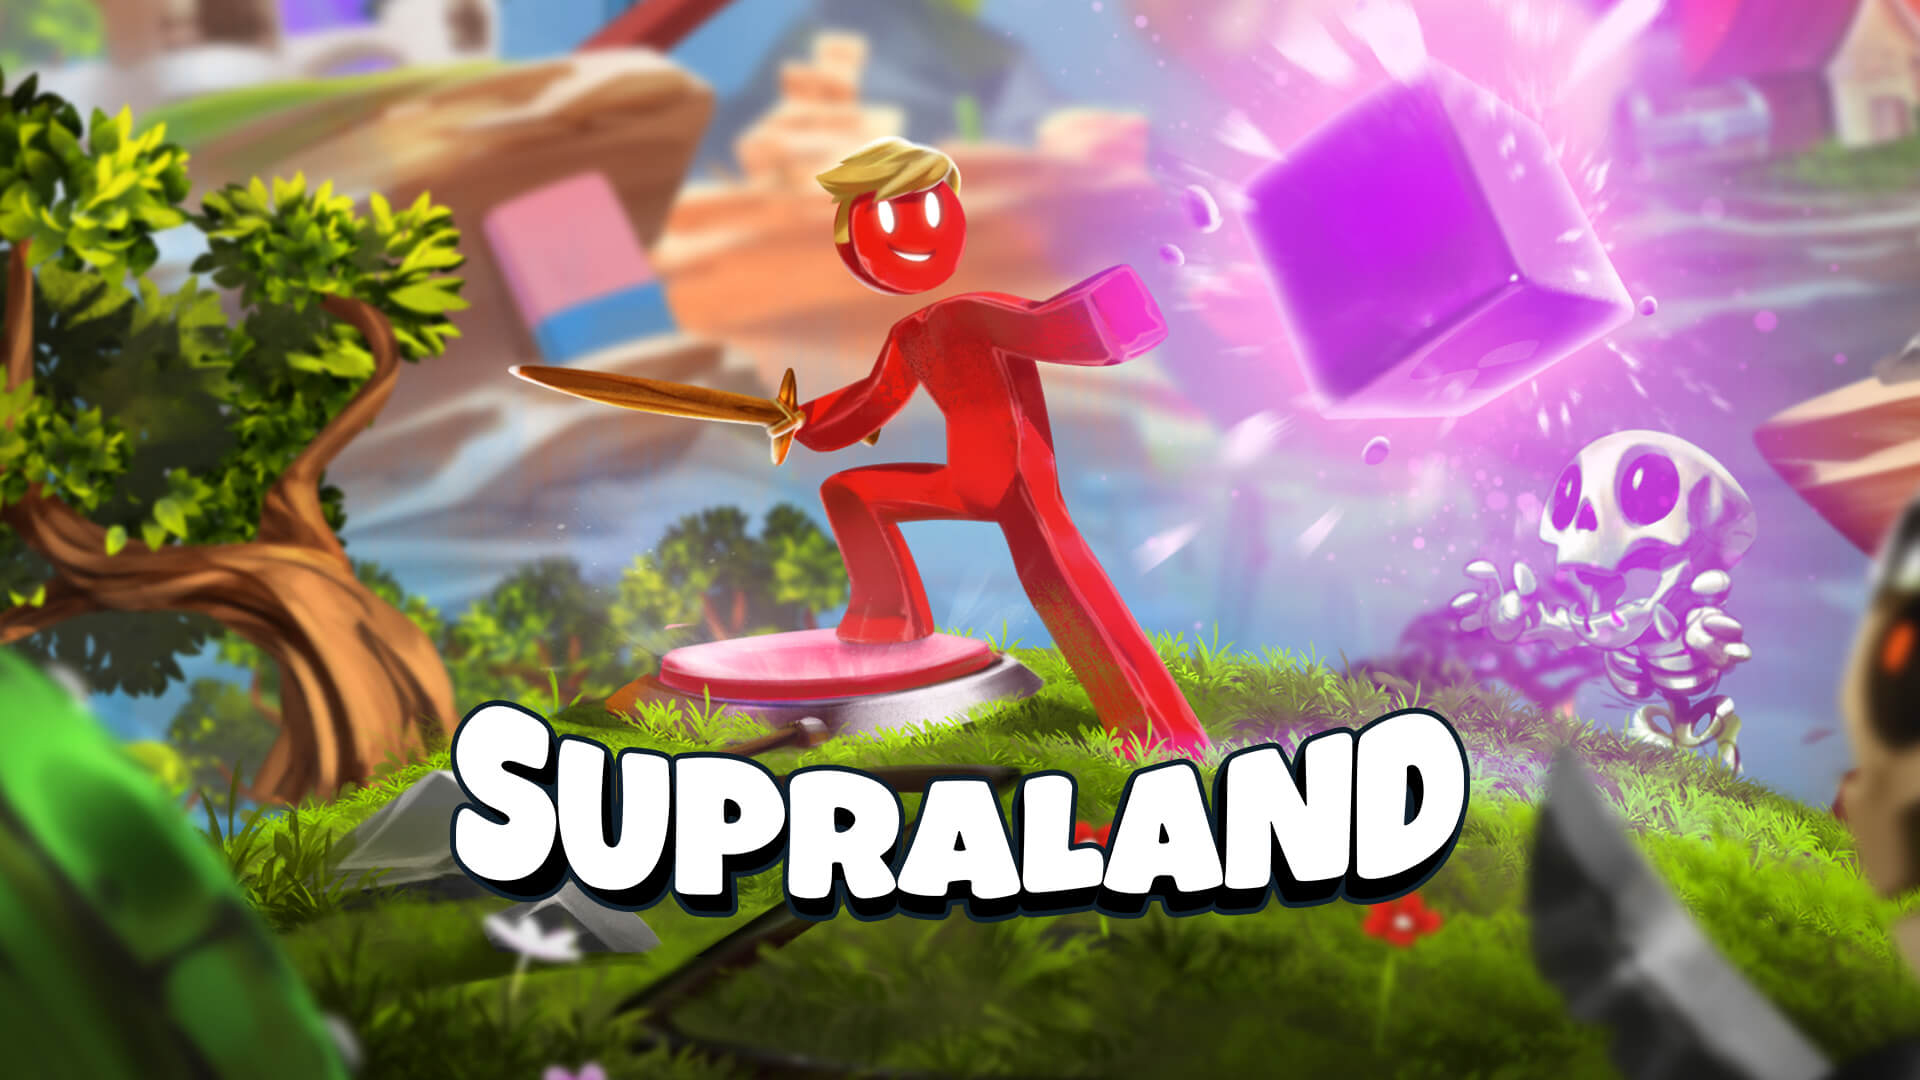 Supraland - darmowy tytuł w Epic Games Store